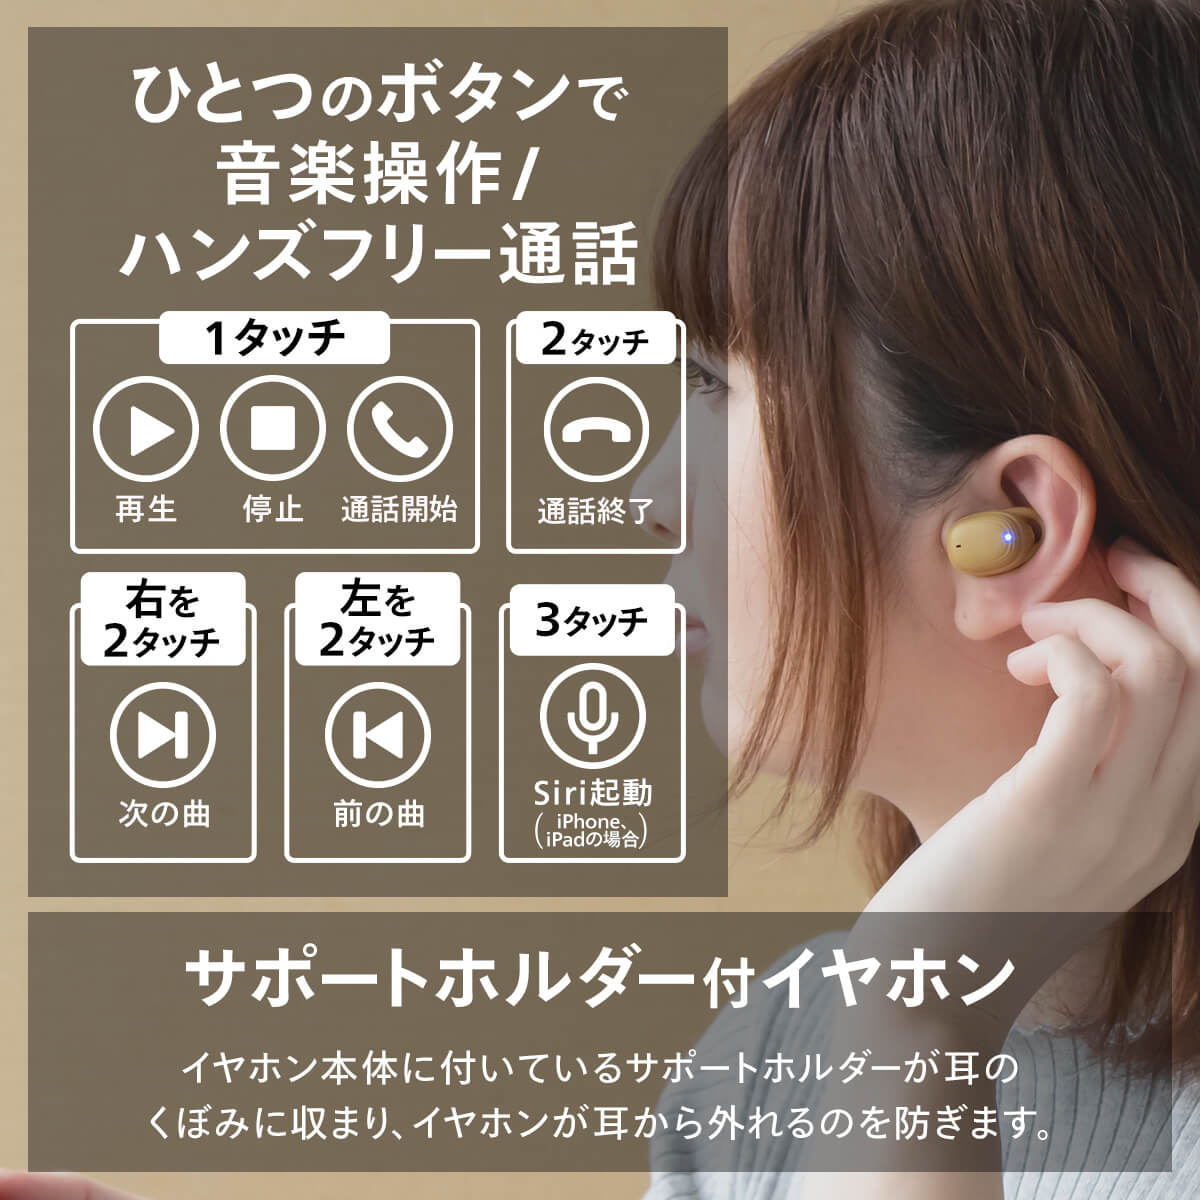 【販売終了】cheero DANBOARD Wireless Earphones